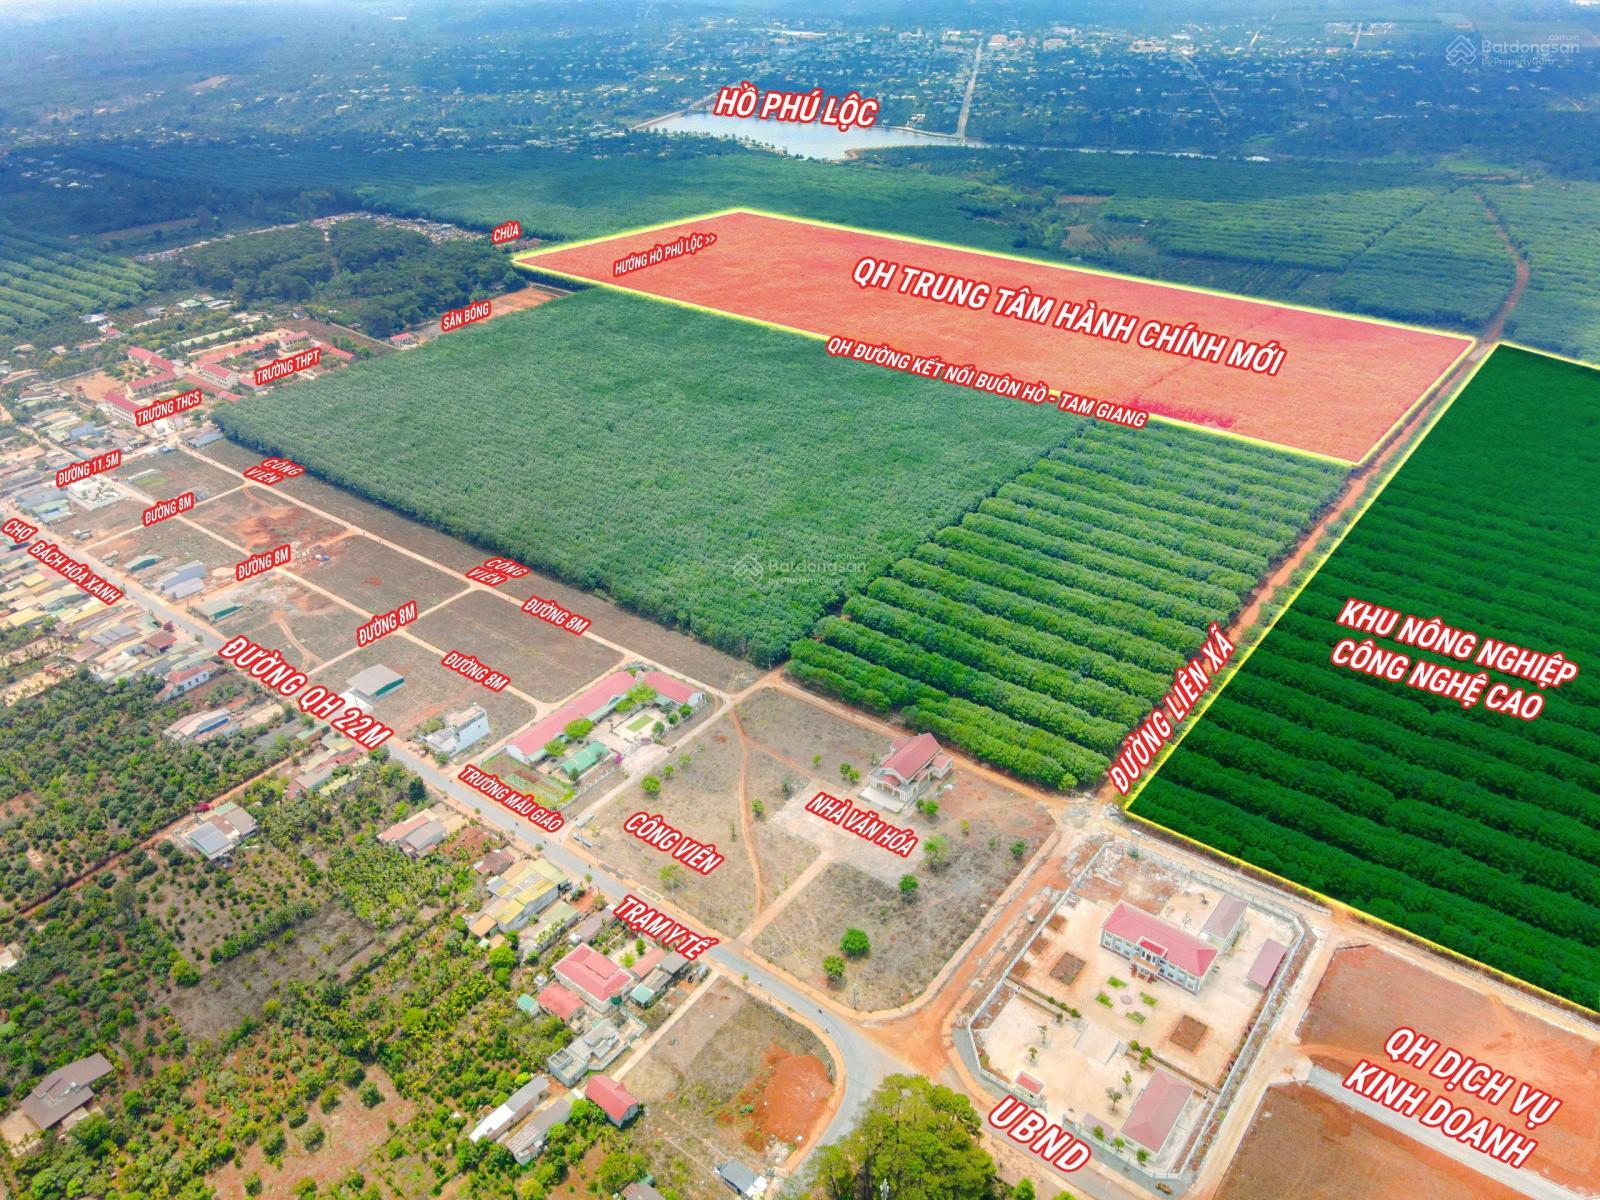 Đất đấu giá trung tâm uỷ ban Phú Lộc - Đăk Lăk - Chỉ từ 5 triệu/m² - Ảnh 3